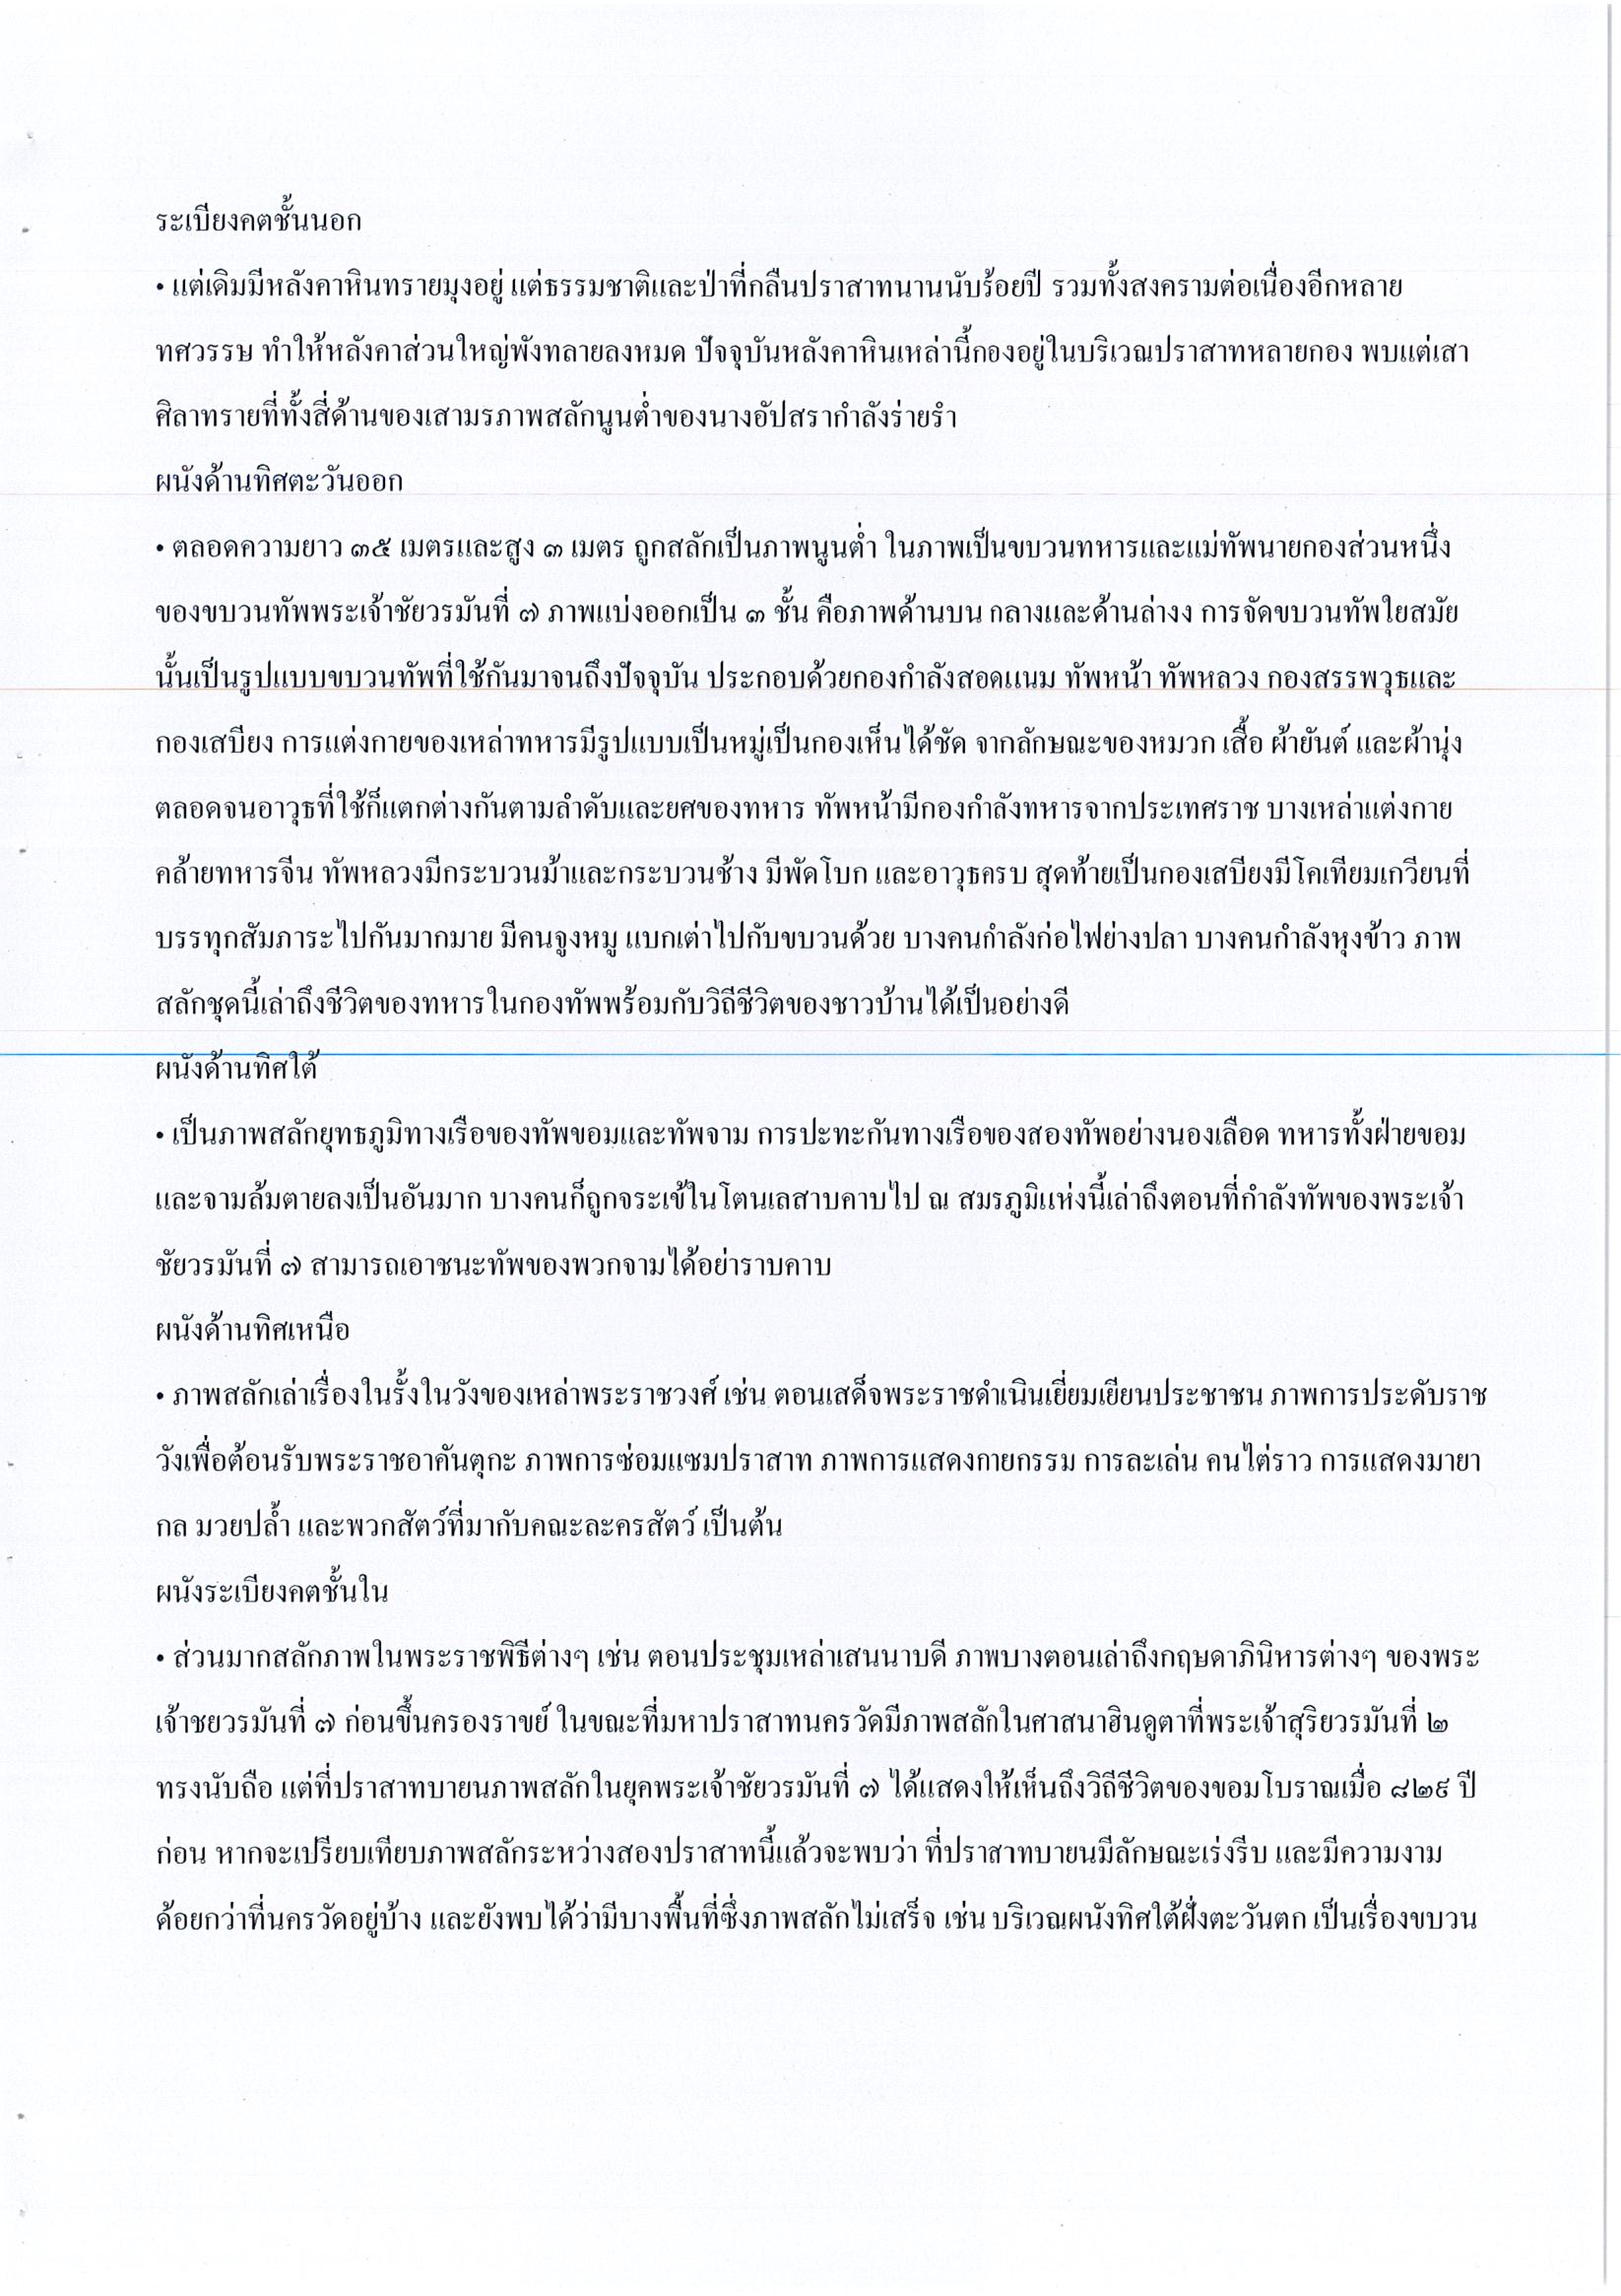 รายงานการเดินทางไปราชการ ณ ราชอาณาจักรกัมพูชา ระหว่างวันที่ 15 – 18 มิถุนายน 2560 โครงการโขนธรรมศาสตร์สัญจรย้อนรอยอารยธรรมขอมโบราณ